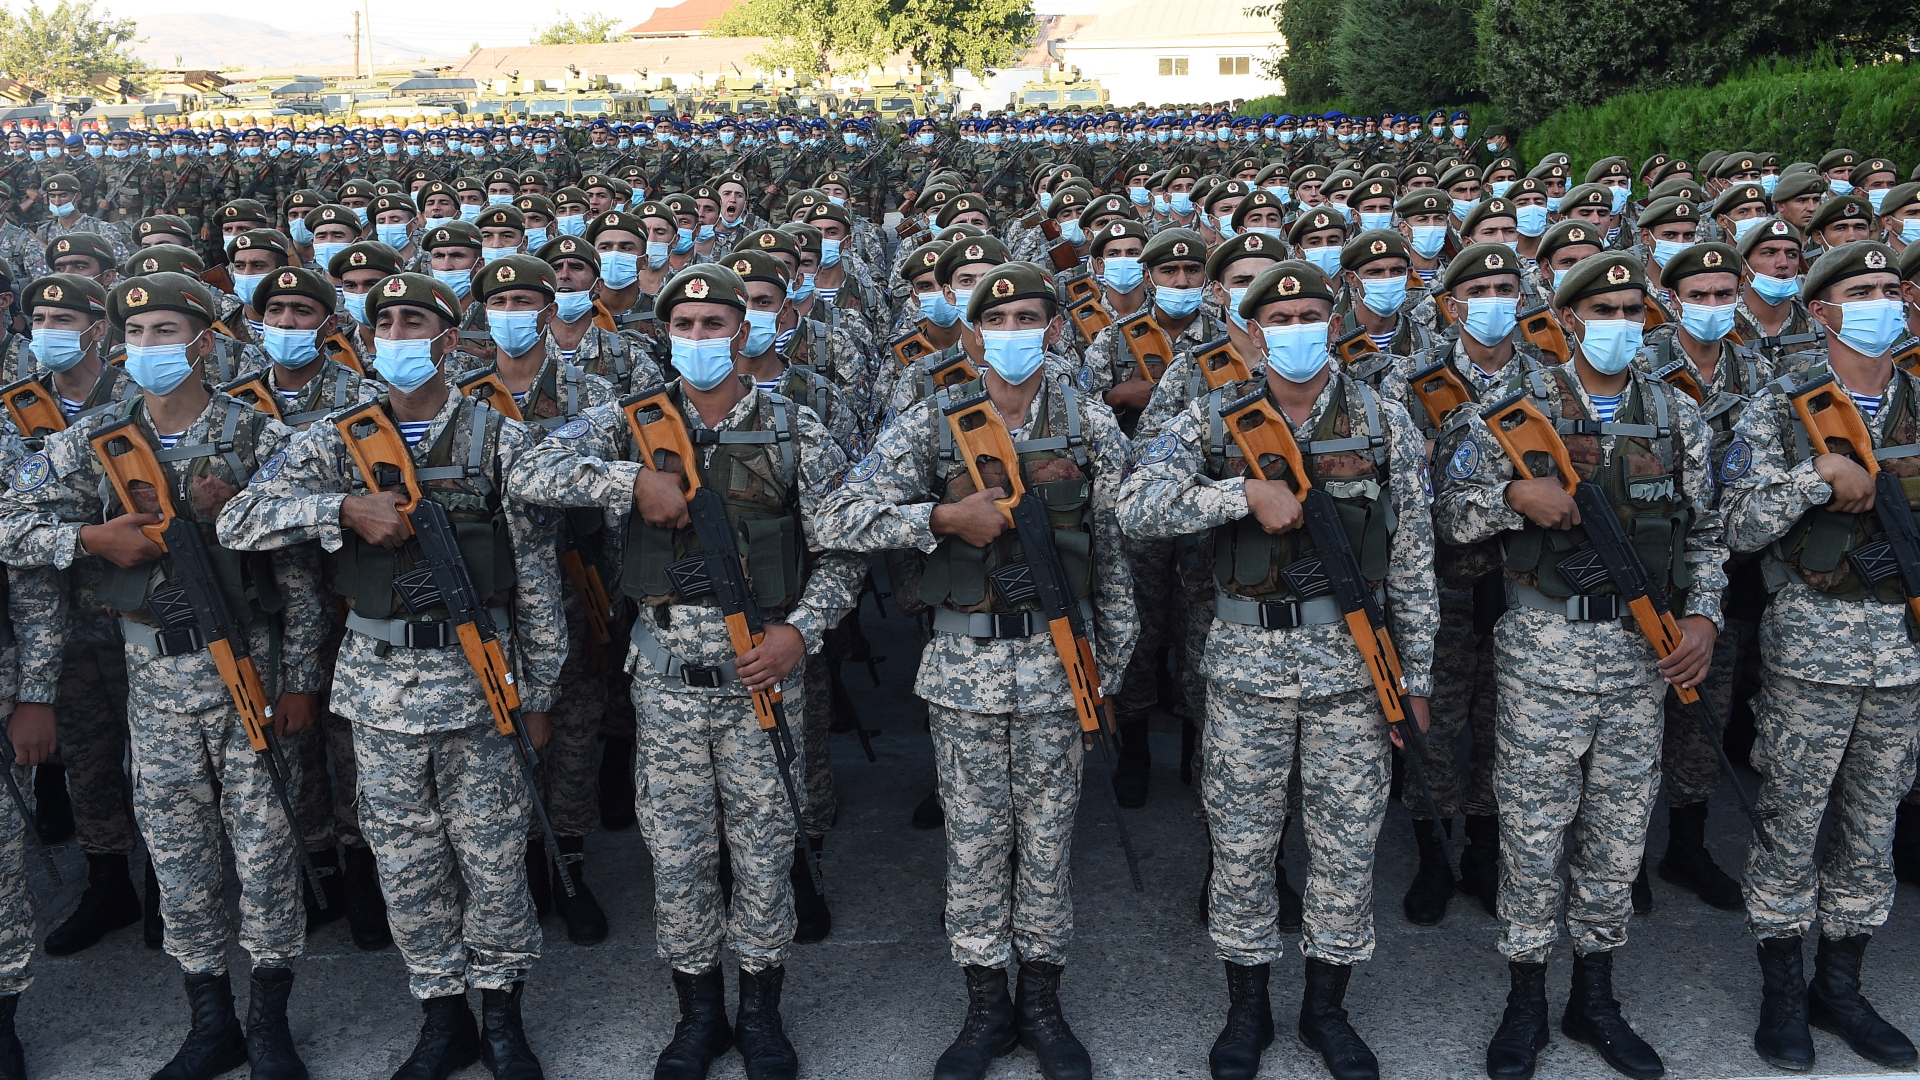 Tadschikische Soldaten bei einer Militärparade | via REUTERS